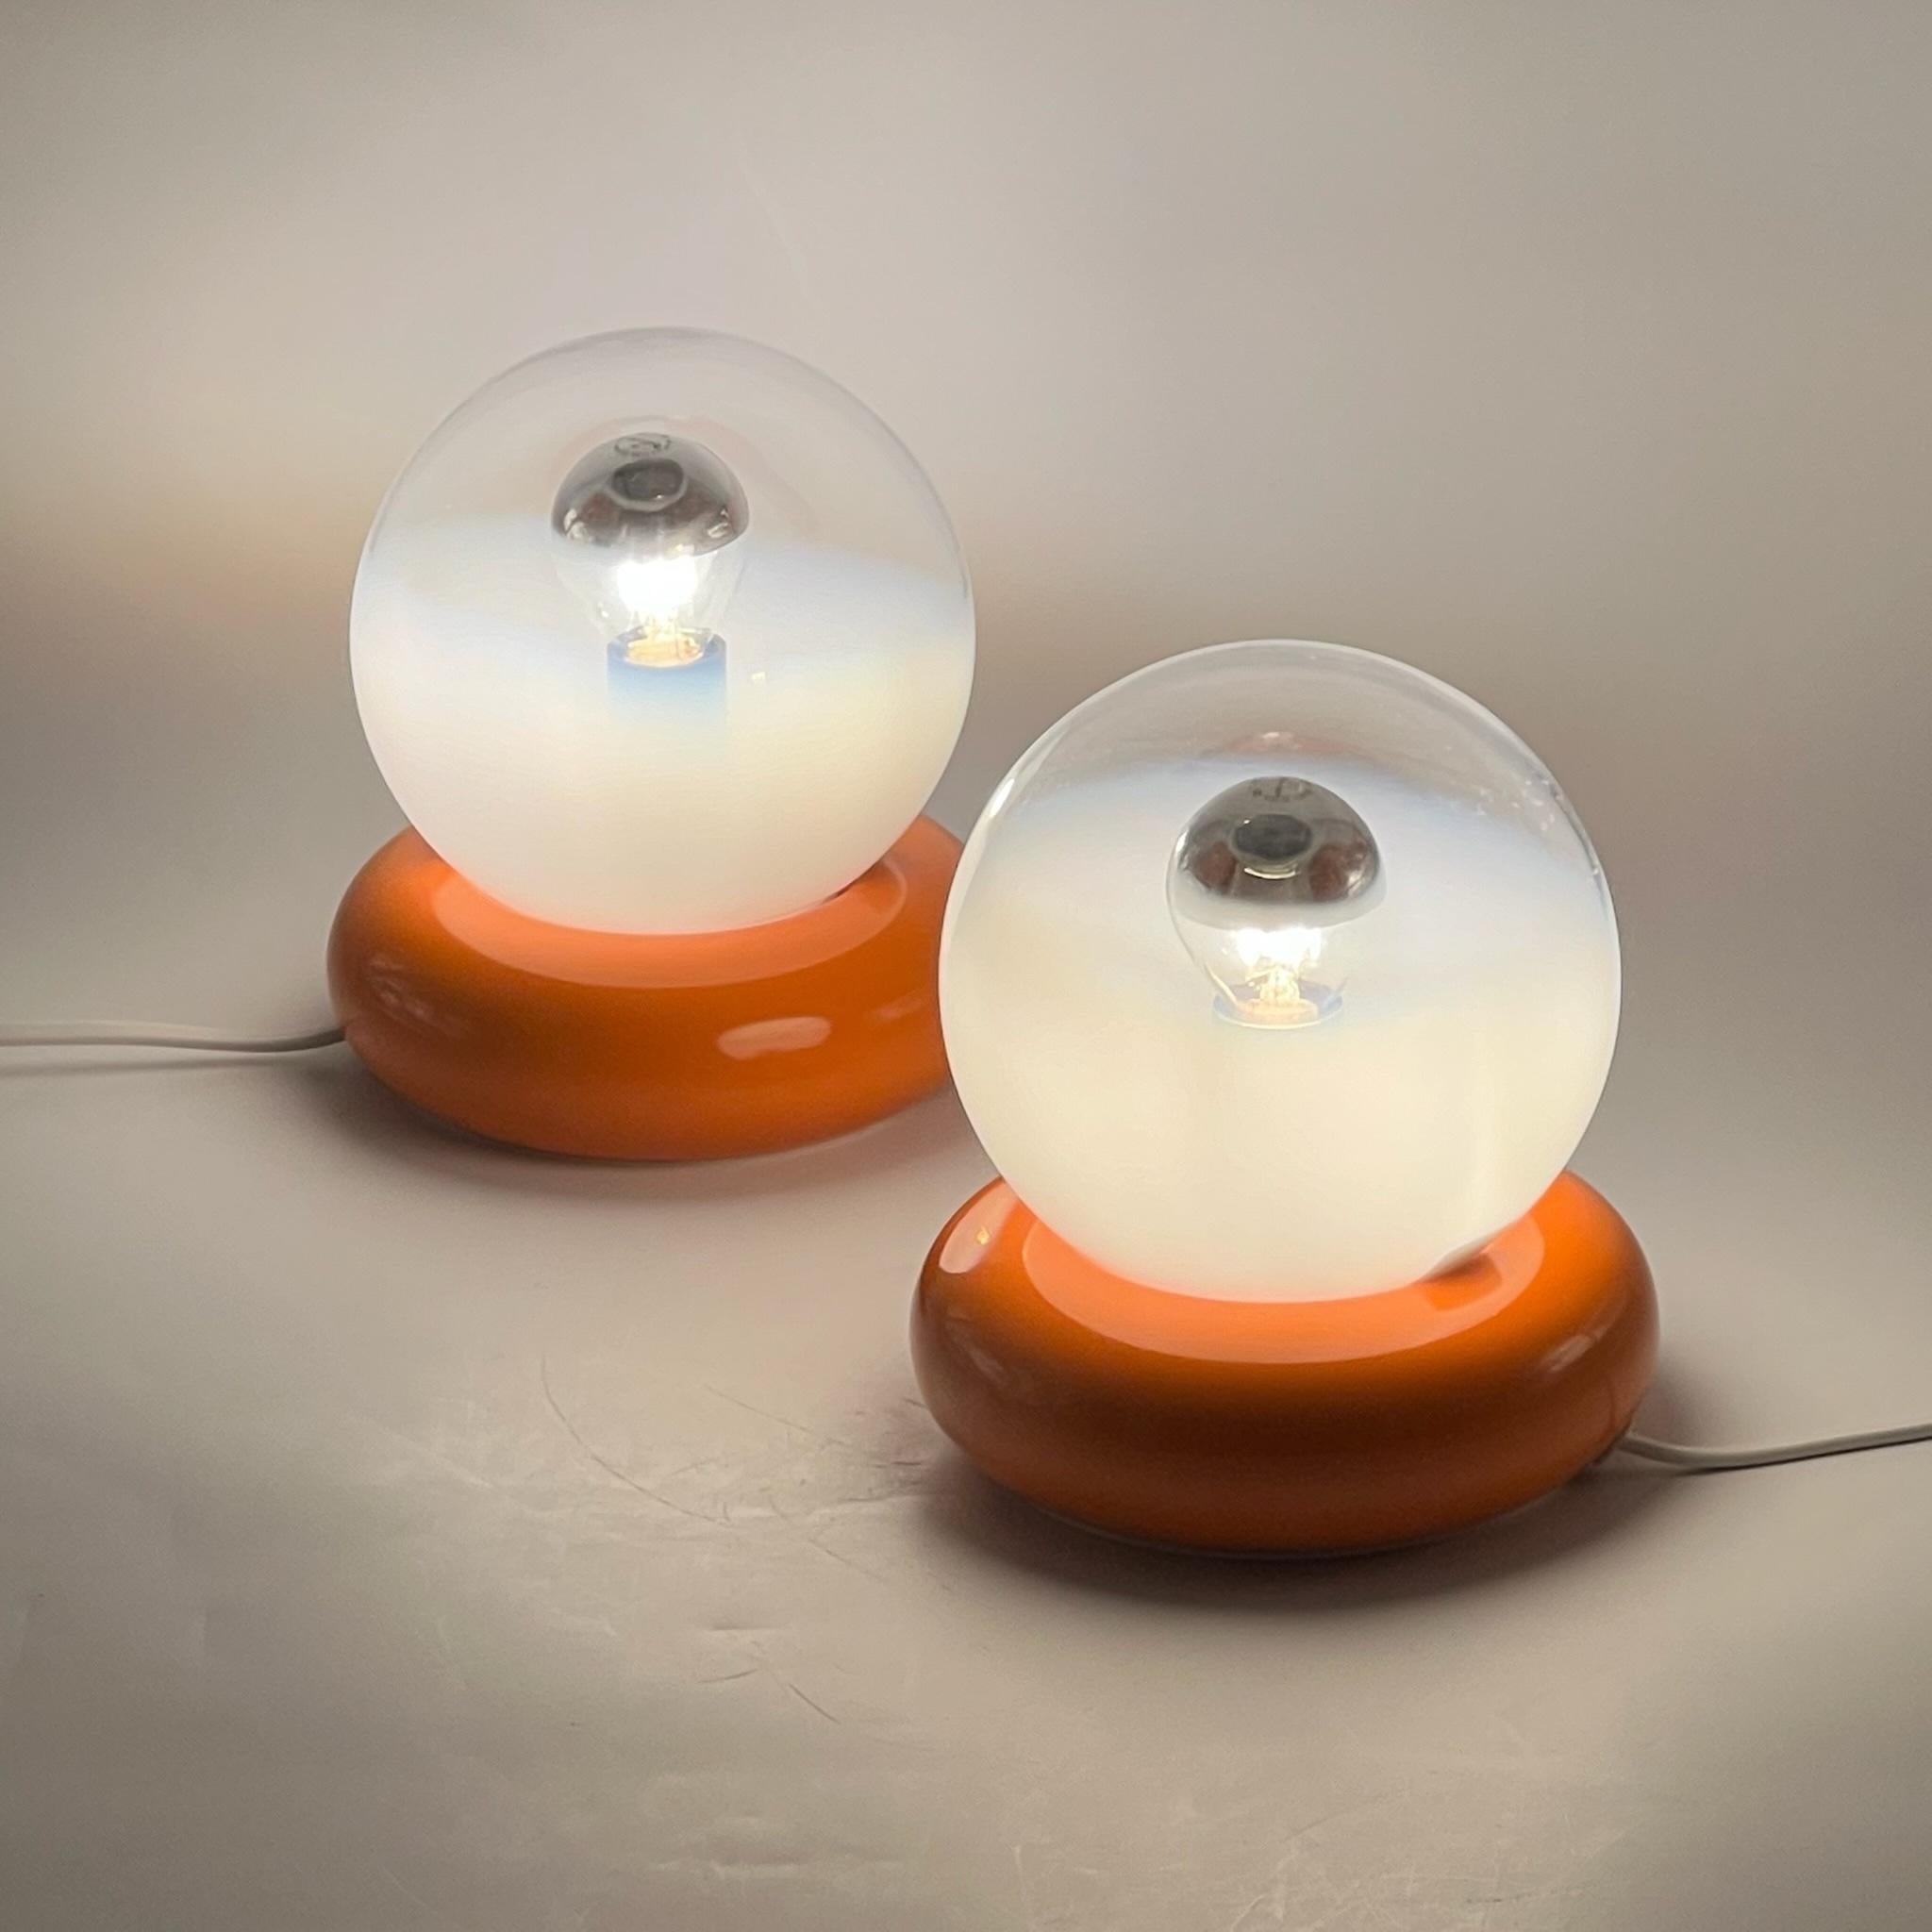 Verschönern Sie Ihren Raum mit diesem exquisiten Paar Vintage Targetti Sankey Tischlampen, die eine einzigartige Mischung aus leuchtend orangefarbenen Metallsockeln und handgefertigten Glaskugeln darstellen. Die Glaskugeln sind transparent mit einer